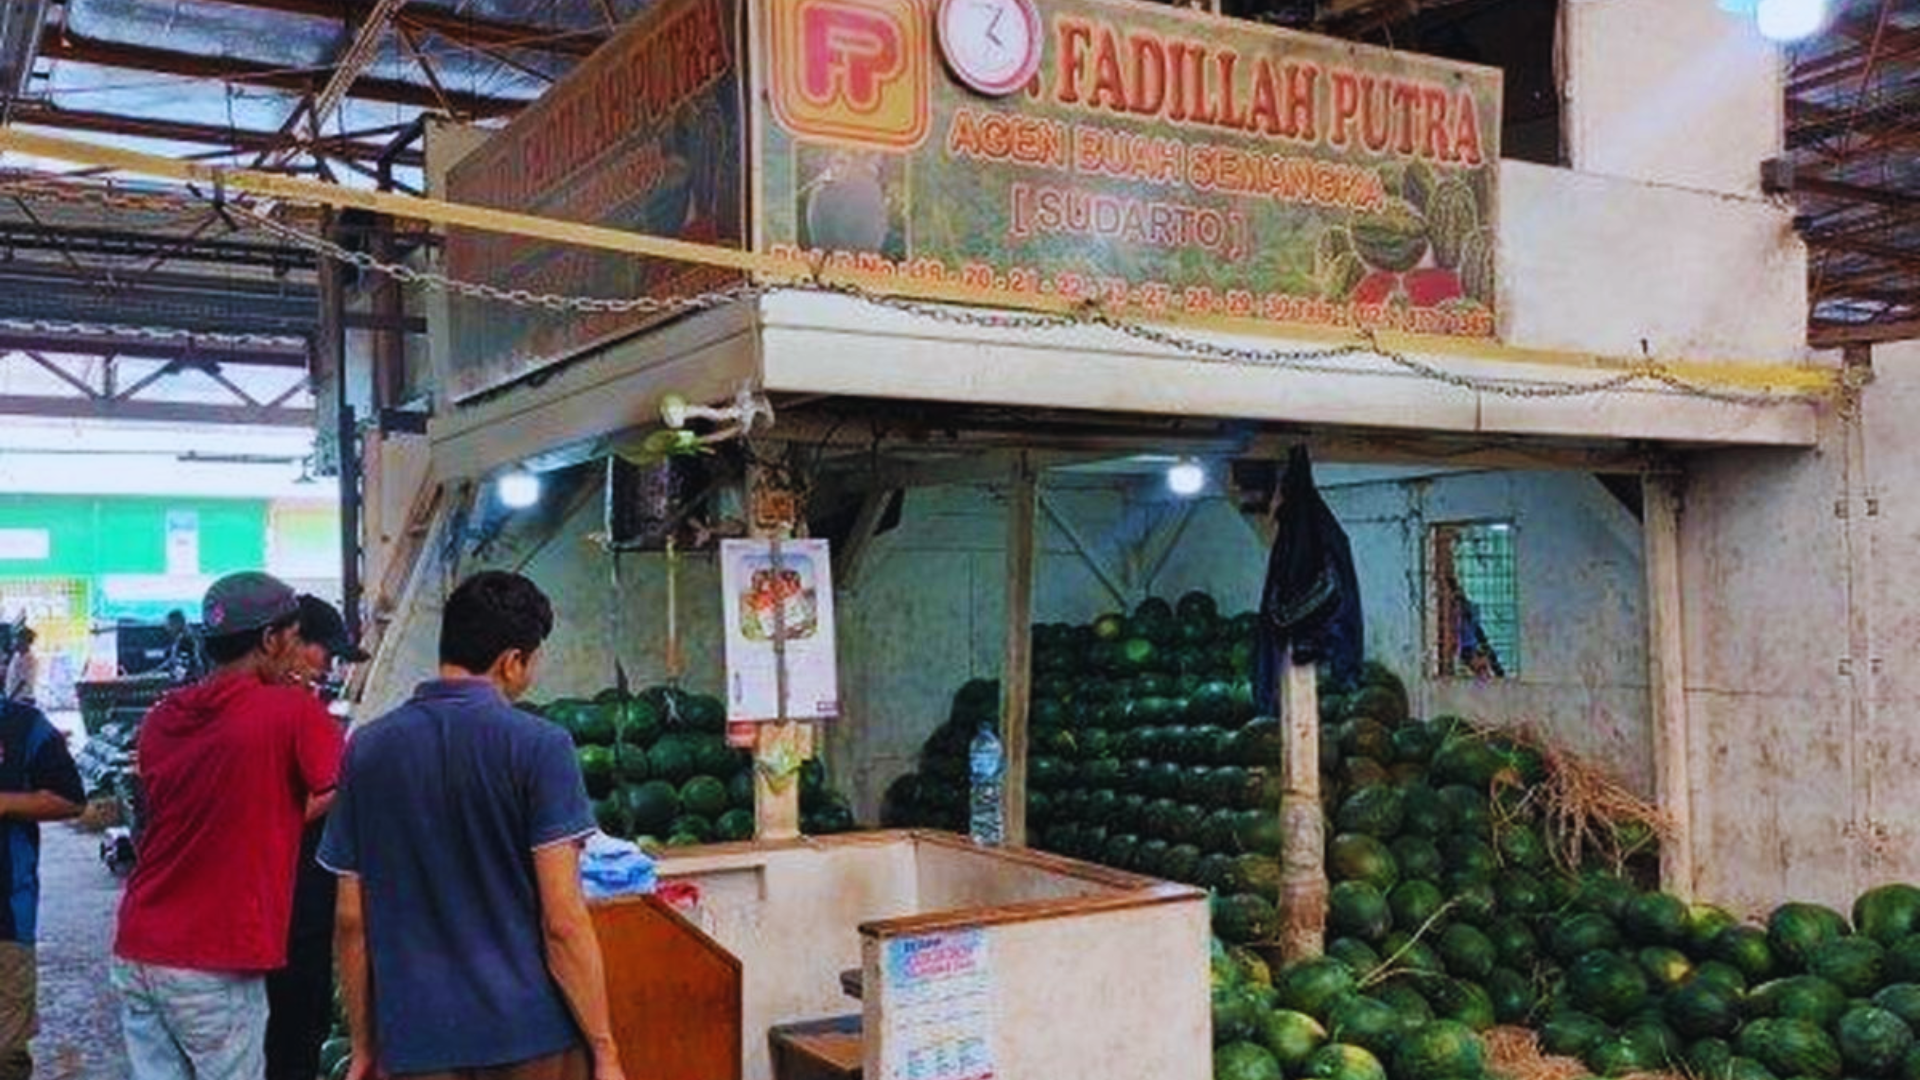 Penjual Semangka Tewas Disiram Air Keras, Pedagang Bercerita Cekcok Lama